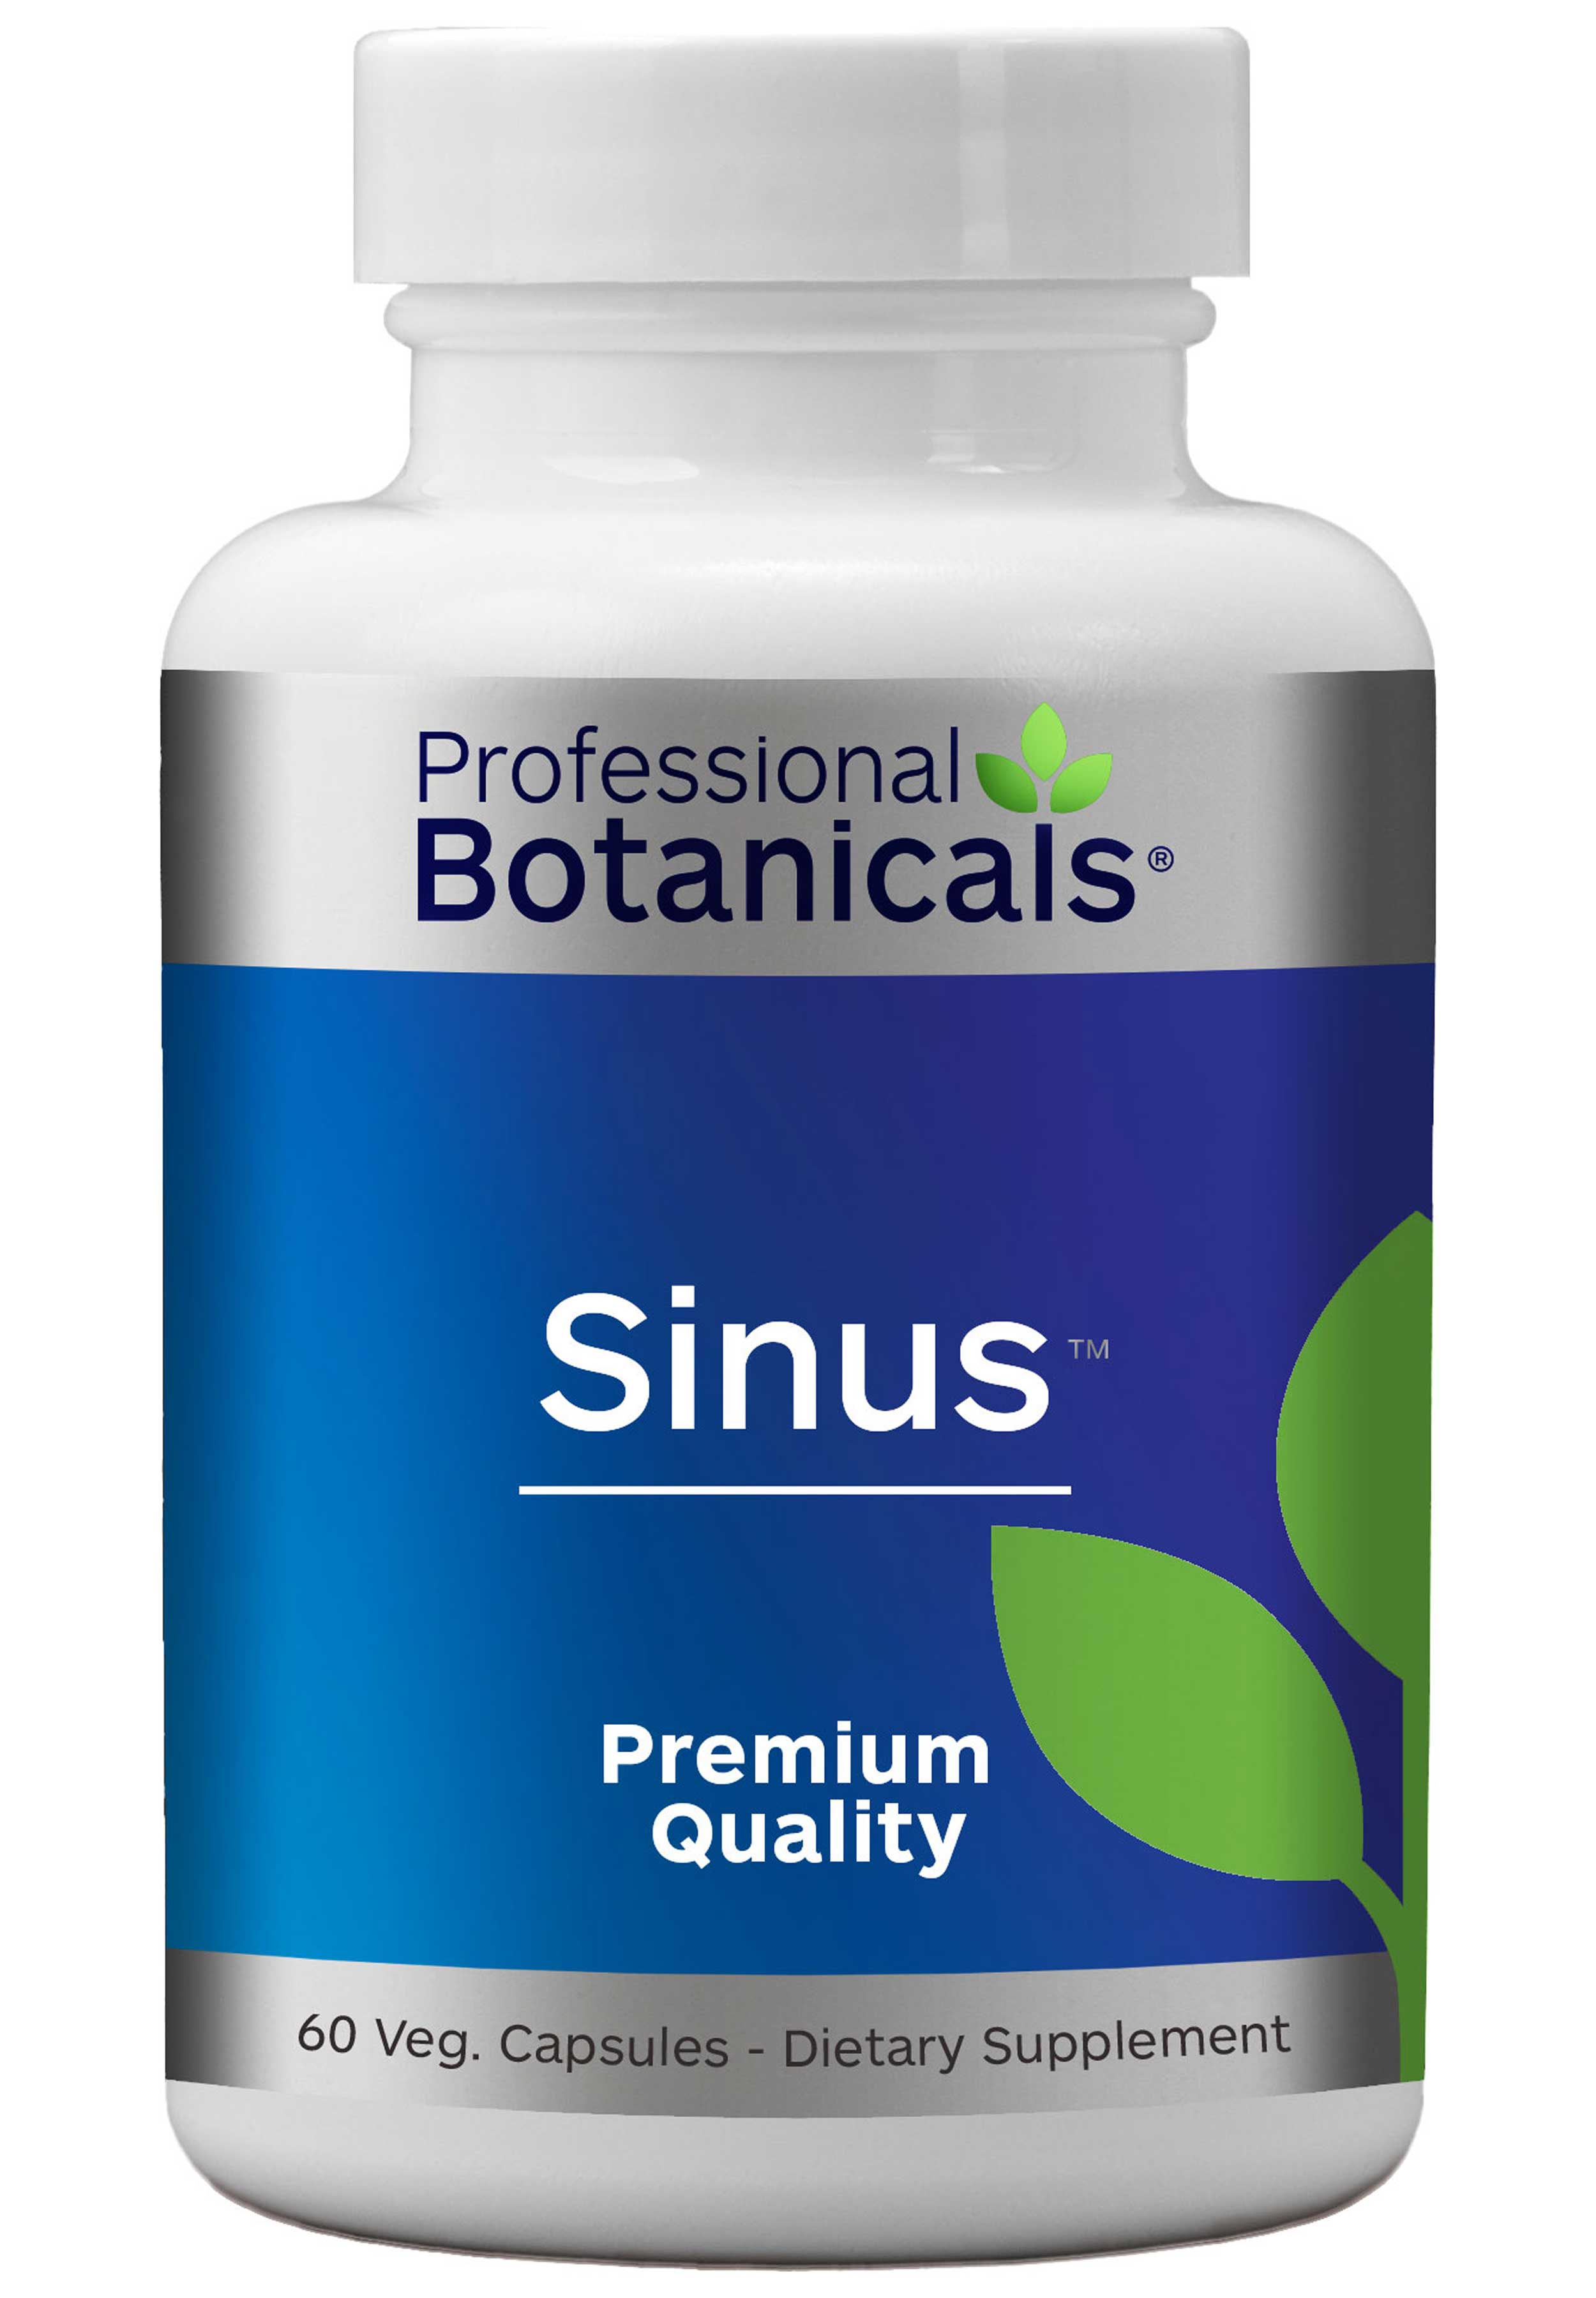  Professional Botanicals Sinus